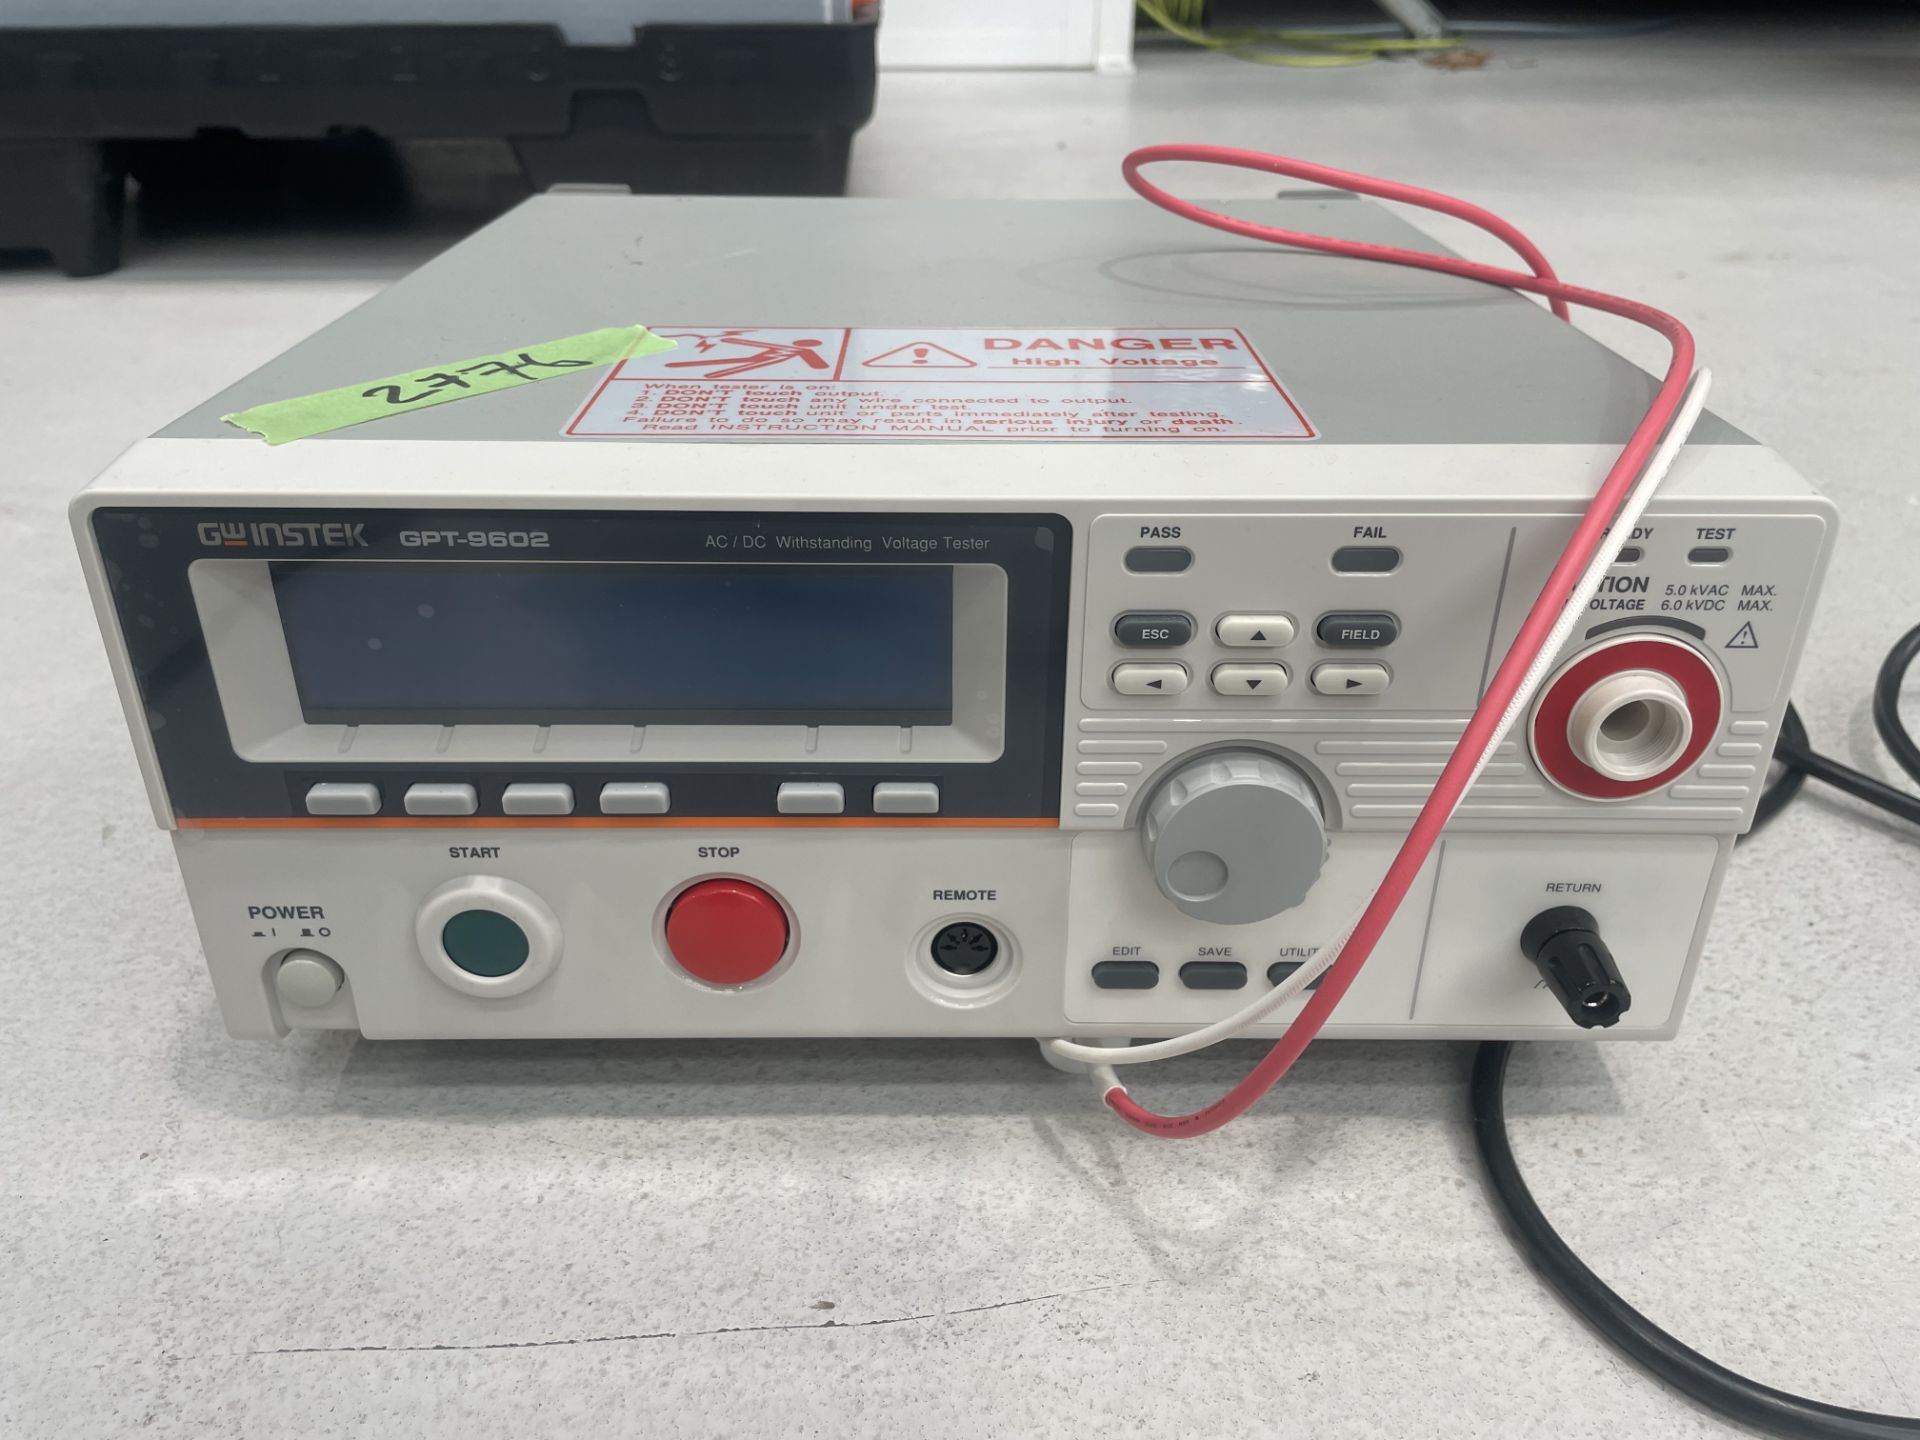 GW Instek GPTR-9602 AC/DC withstanding voltage tester